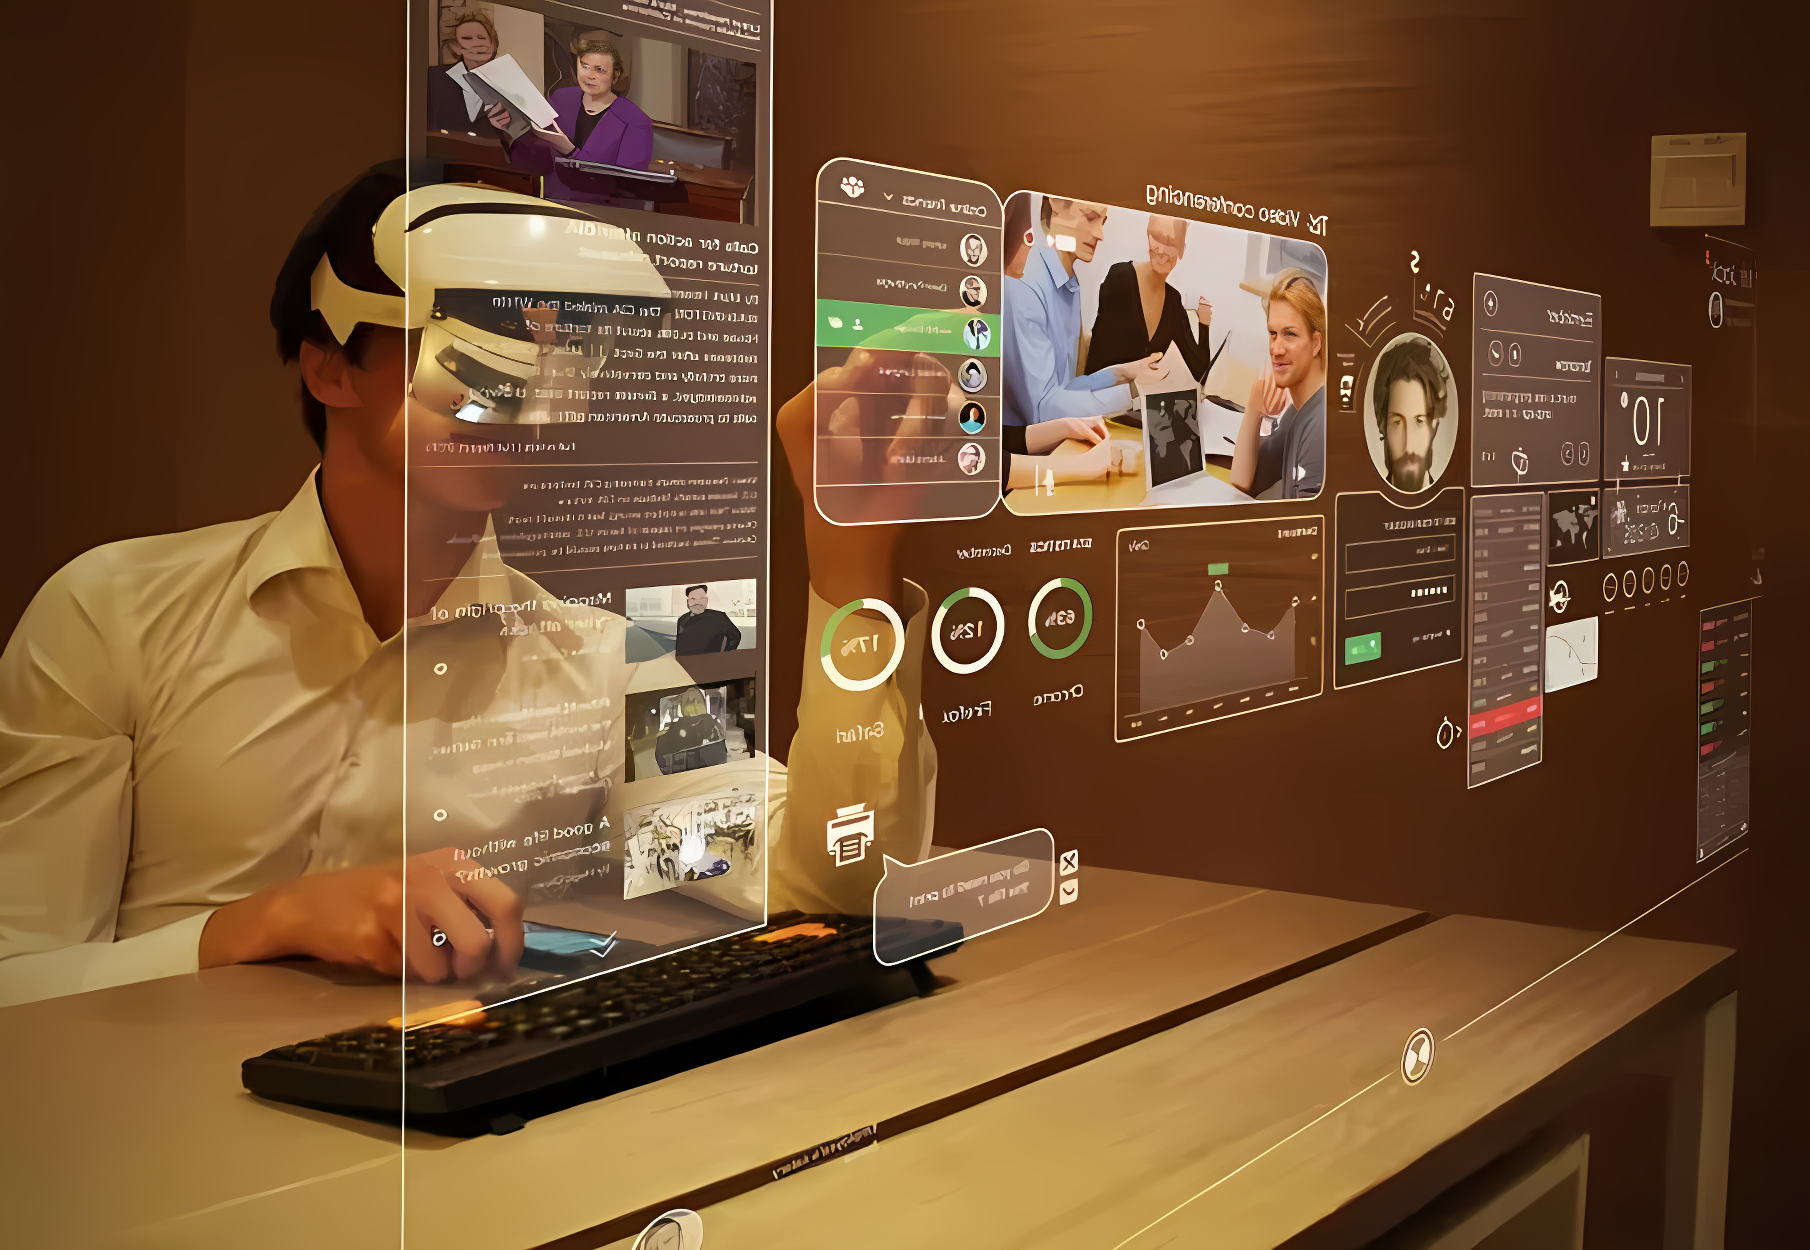 图片展示一位男士戴着头戴式设备，面前是虚拟现实中的多个悬浮屏幕，正在进行高科技交互操作。